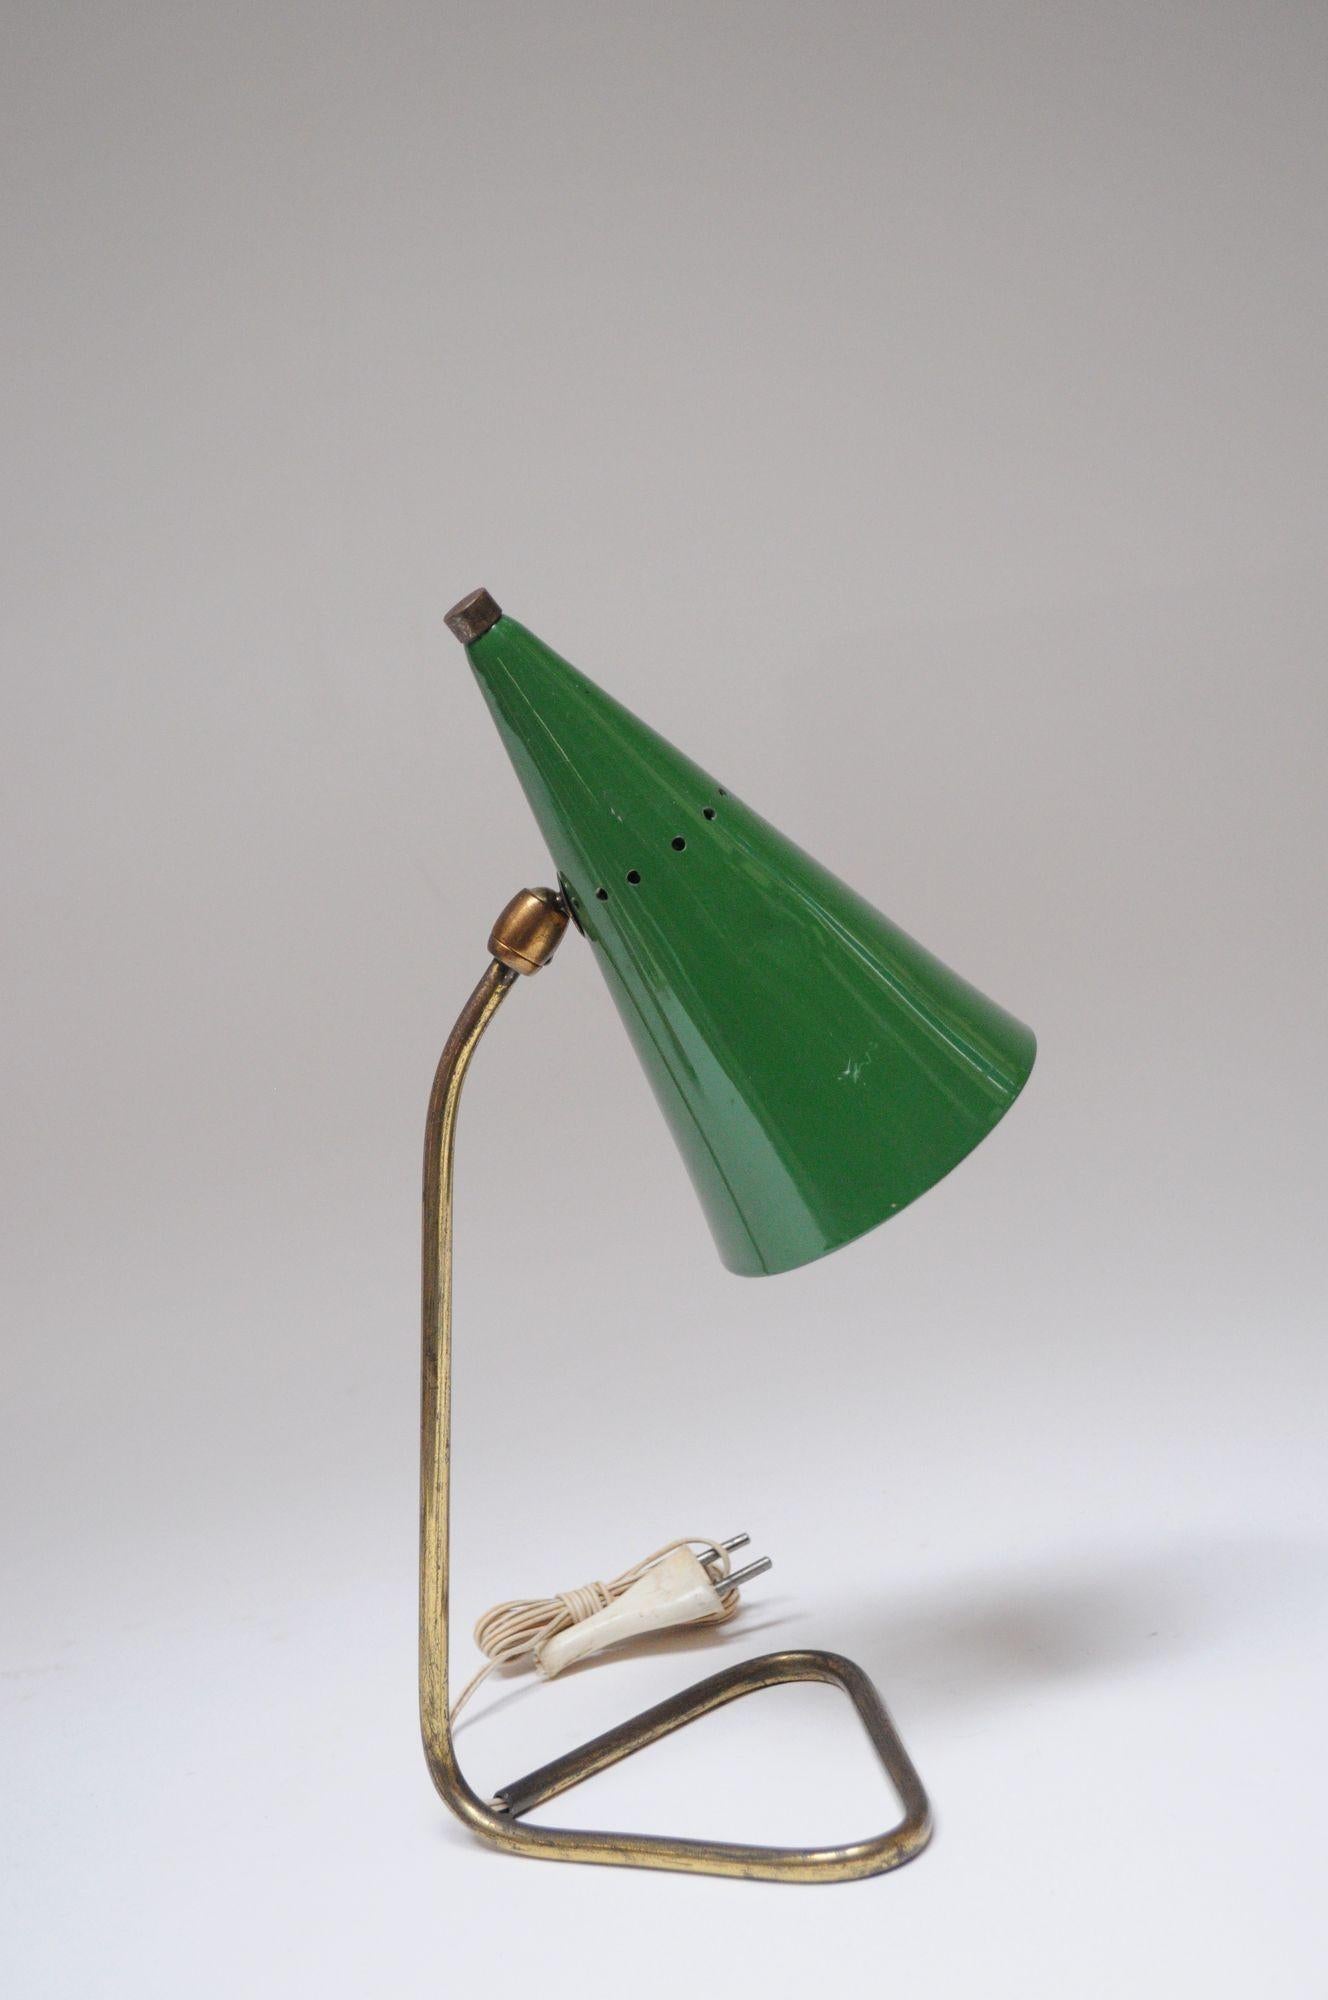 Charmante petite lampe de table/de chevet de Gilardi et Barzaghi (vers 1953/54, Italie).
Composée d'un abat-jour conique perforé en métal laqué vert soutenu par une base tubulaire en laiton.
Etat d'origine avec des traces d'usure sur l'abat-jour